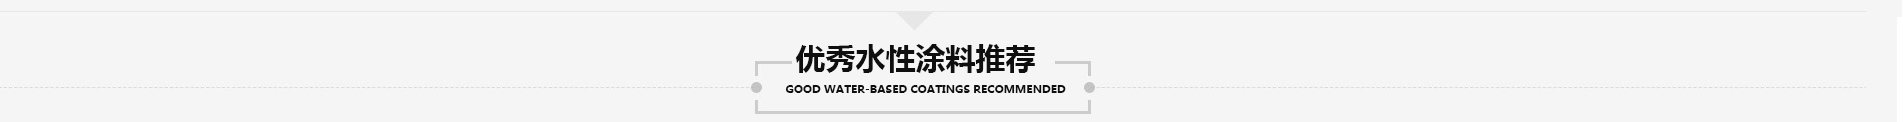 中国水性涂料行业专题报道-产品推荐